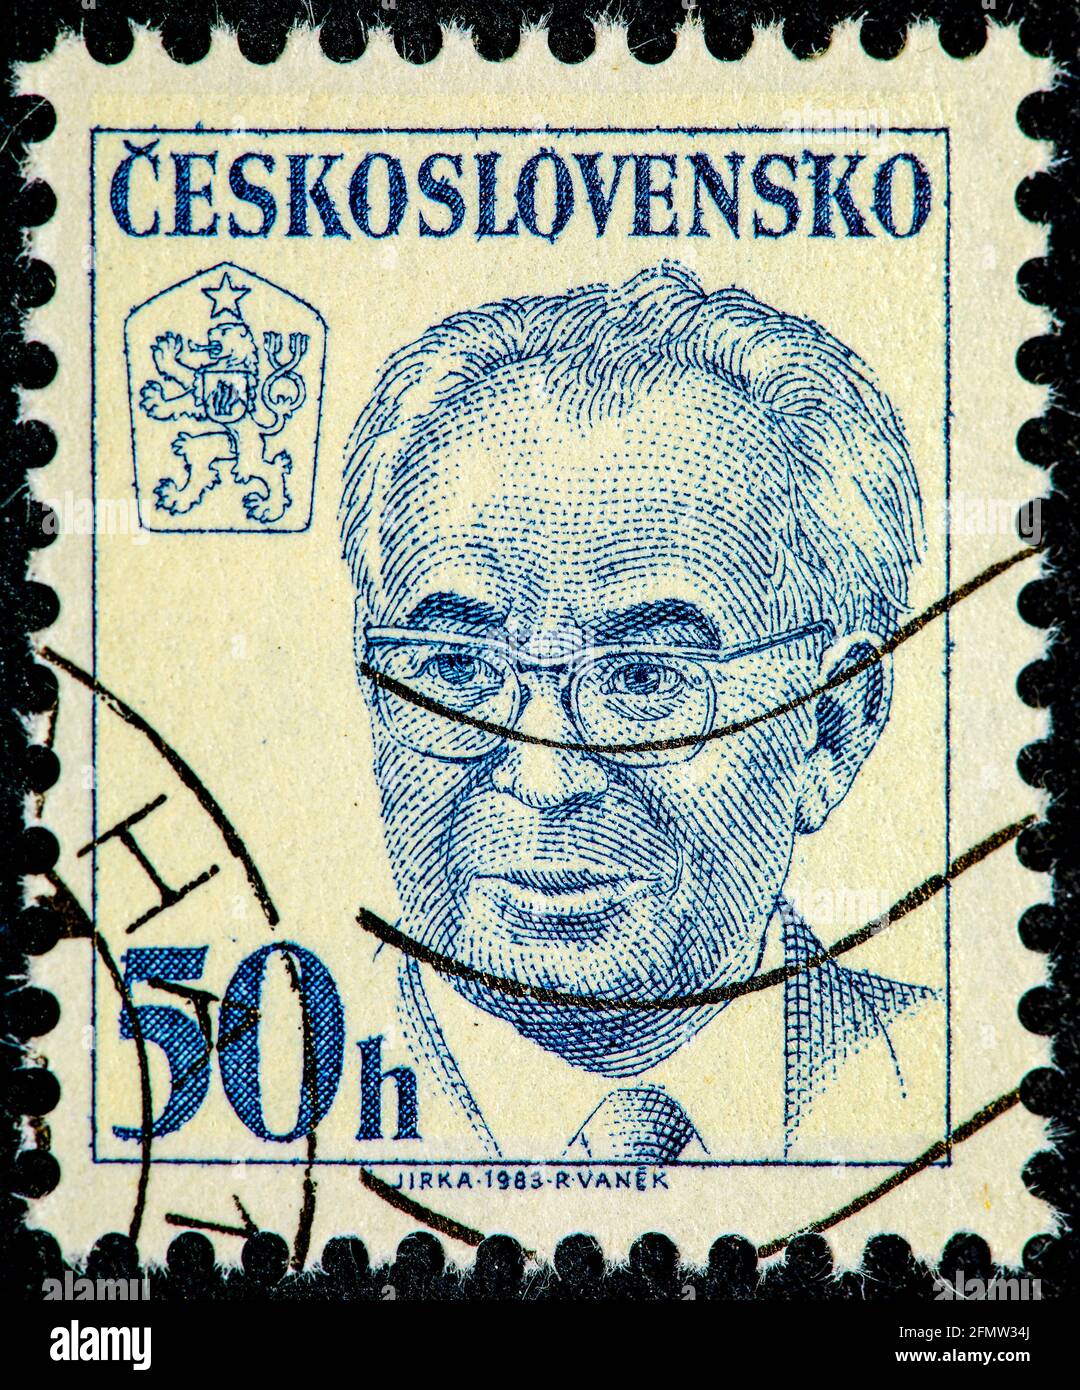 Tchécoslovaquie - Circa 1983: Un timbre imprimé en Tchécoslovaquie montre le président Gustav Husak politicien slovaque vers 1983 Banque D'Images